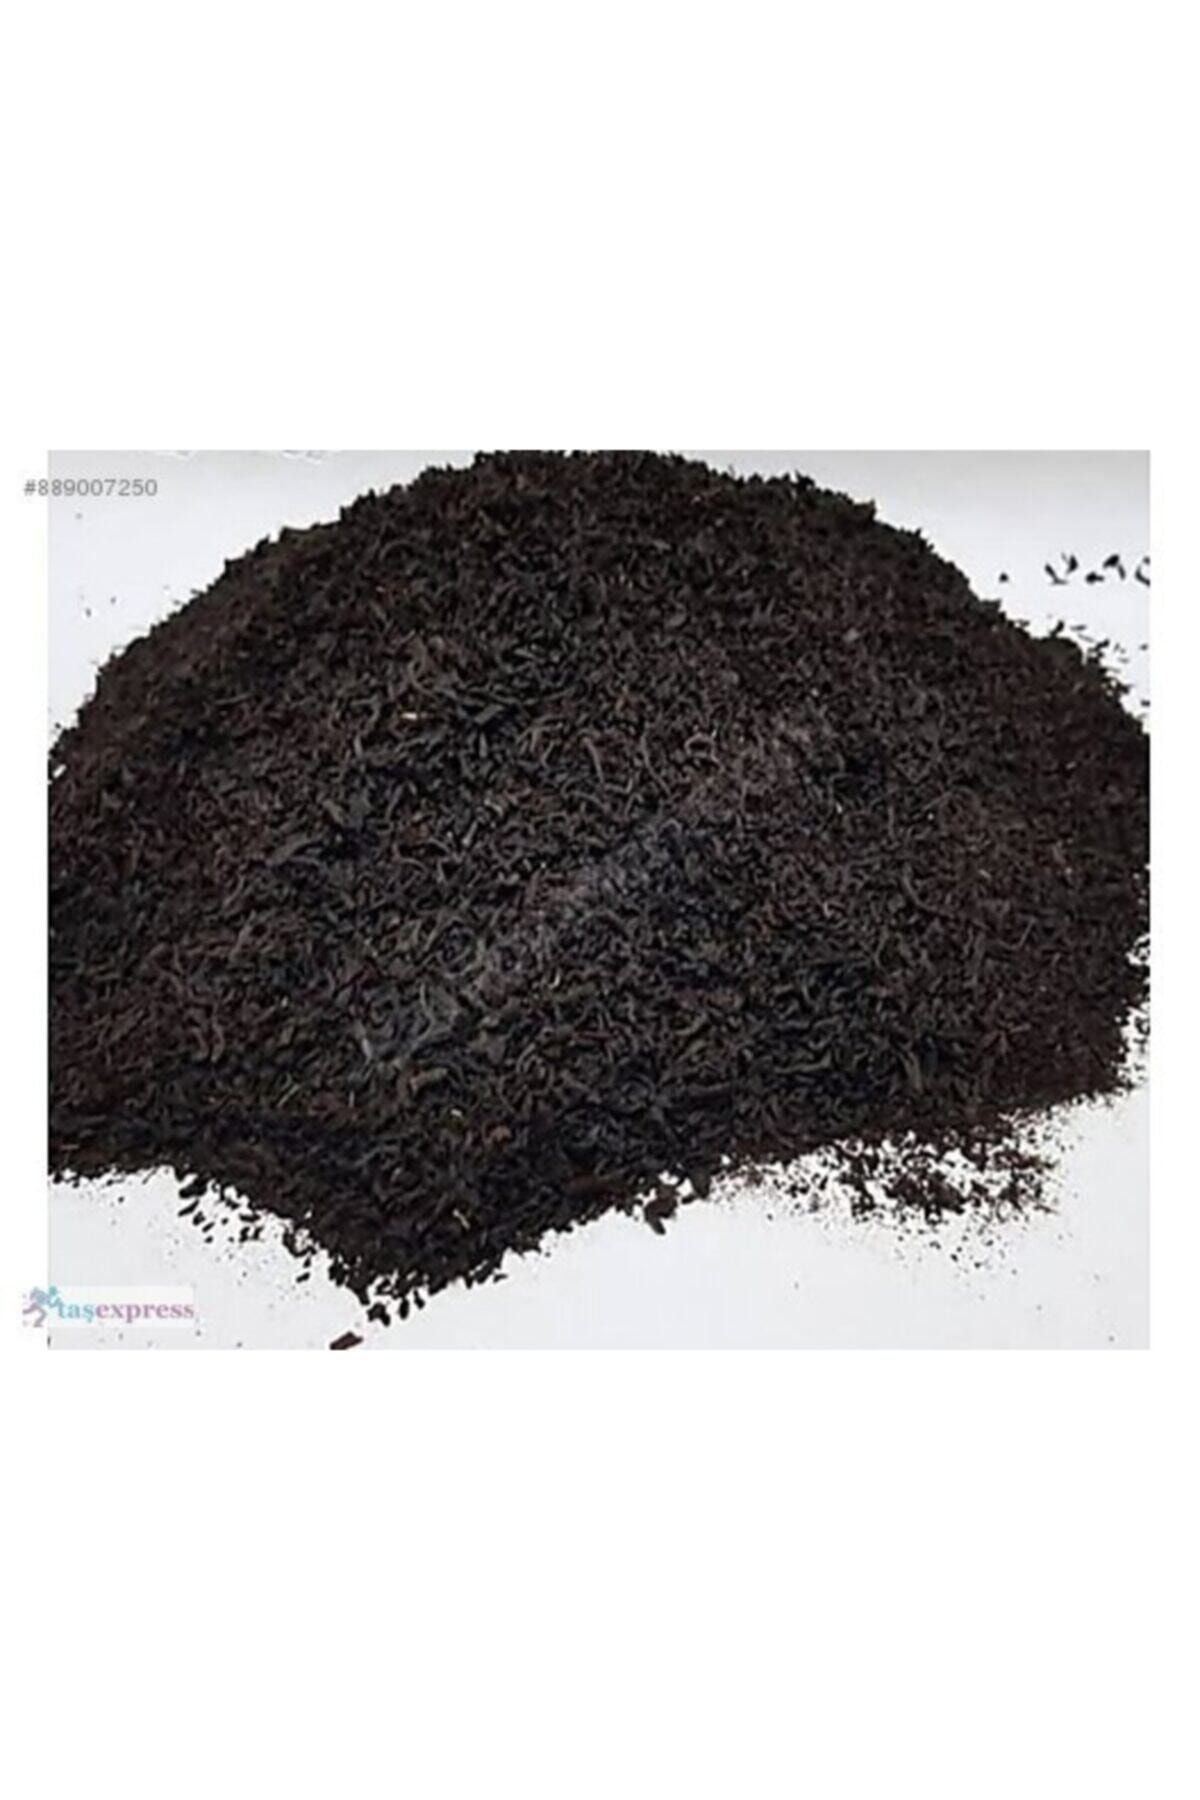 Şanlıurfa Organik Ev Ürünleri Biifvehas 1.sınıf (1 KG) Özel Bifvehas Kaliteli Çay”lar Karışımıdır